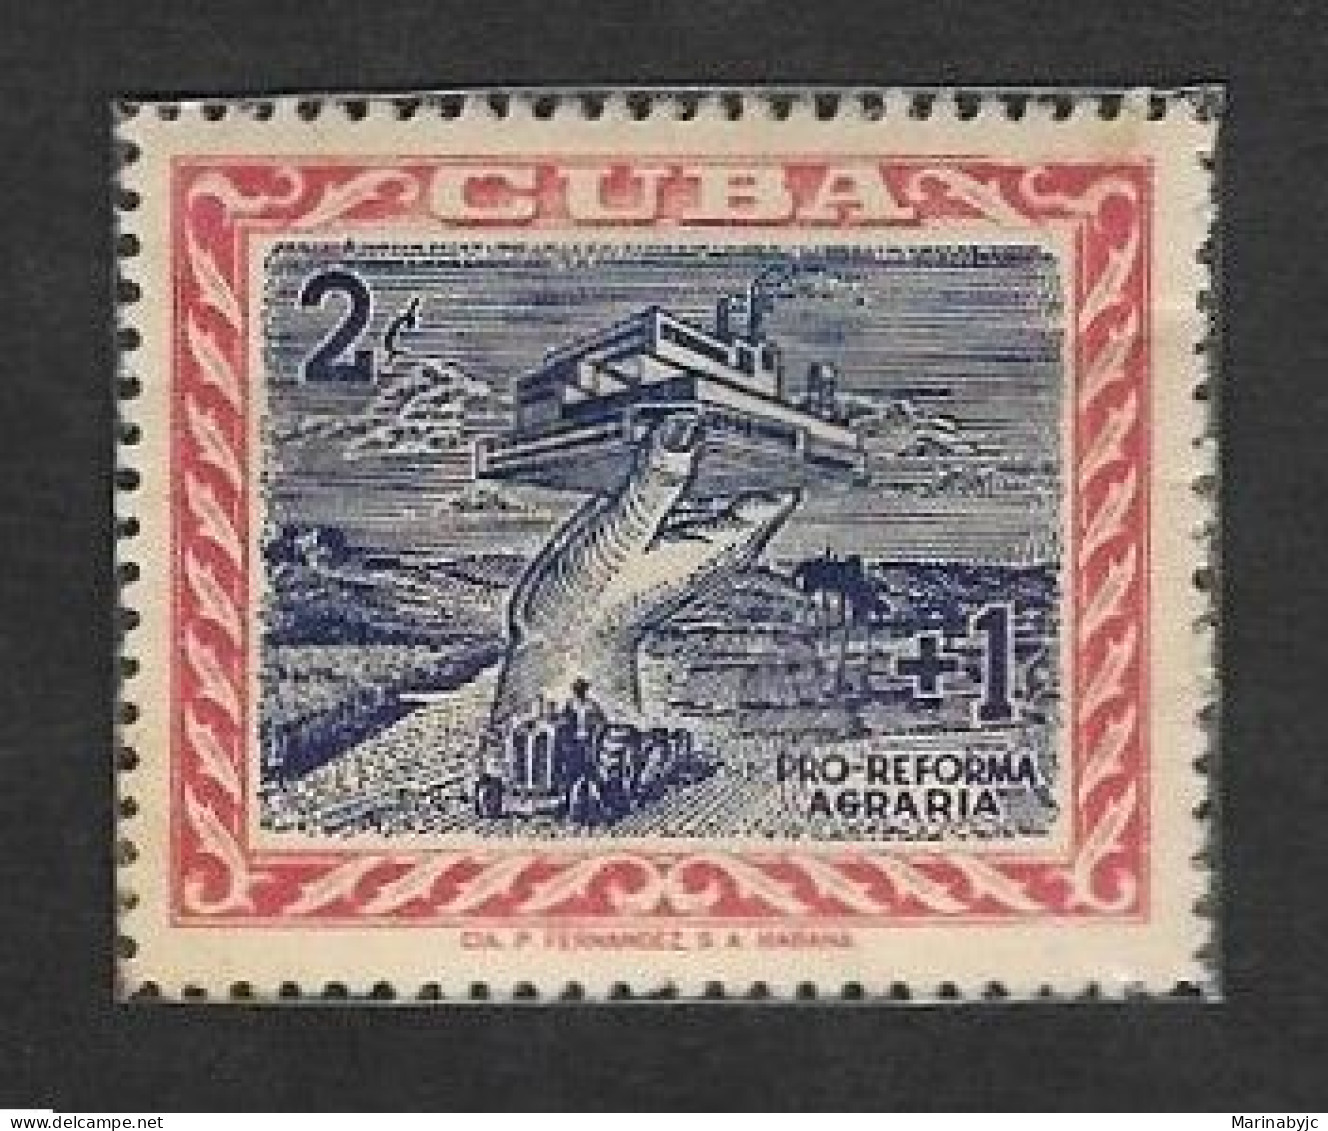 SE)1959 CUBA, THE CUBAN REVOLUTION, AGRICULTURAL REFORM, MNH - Oblitérés